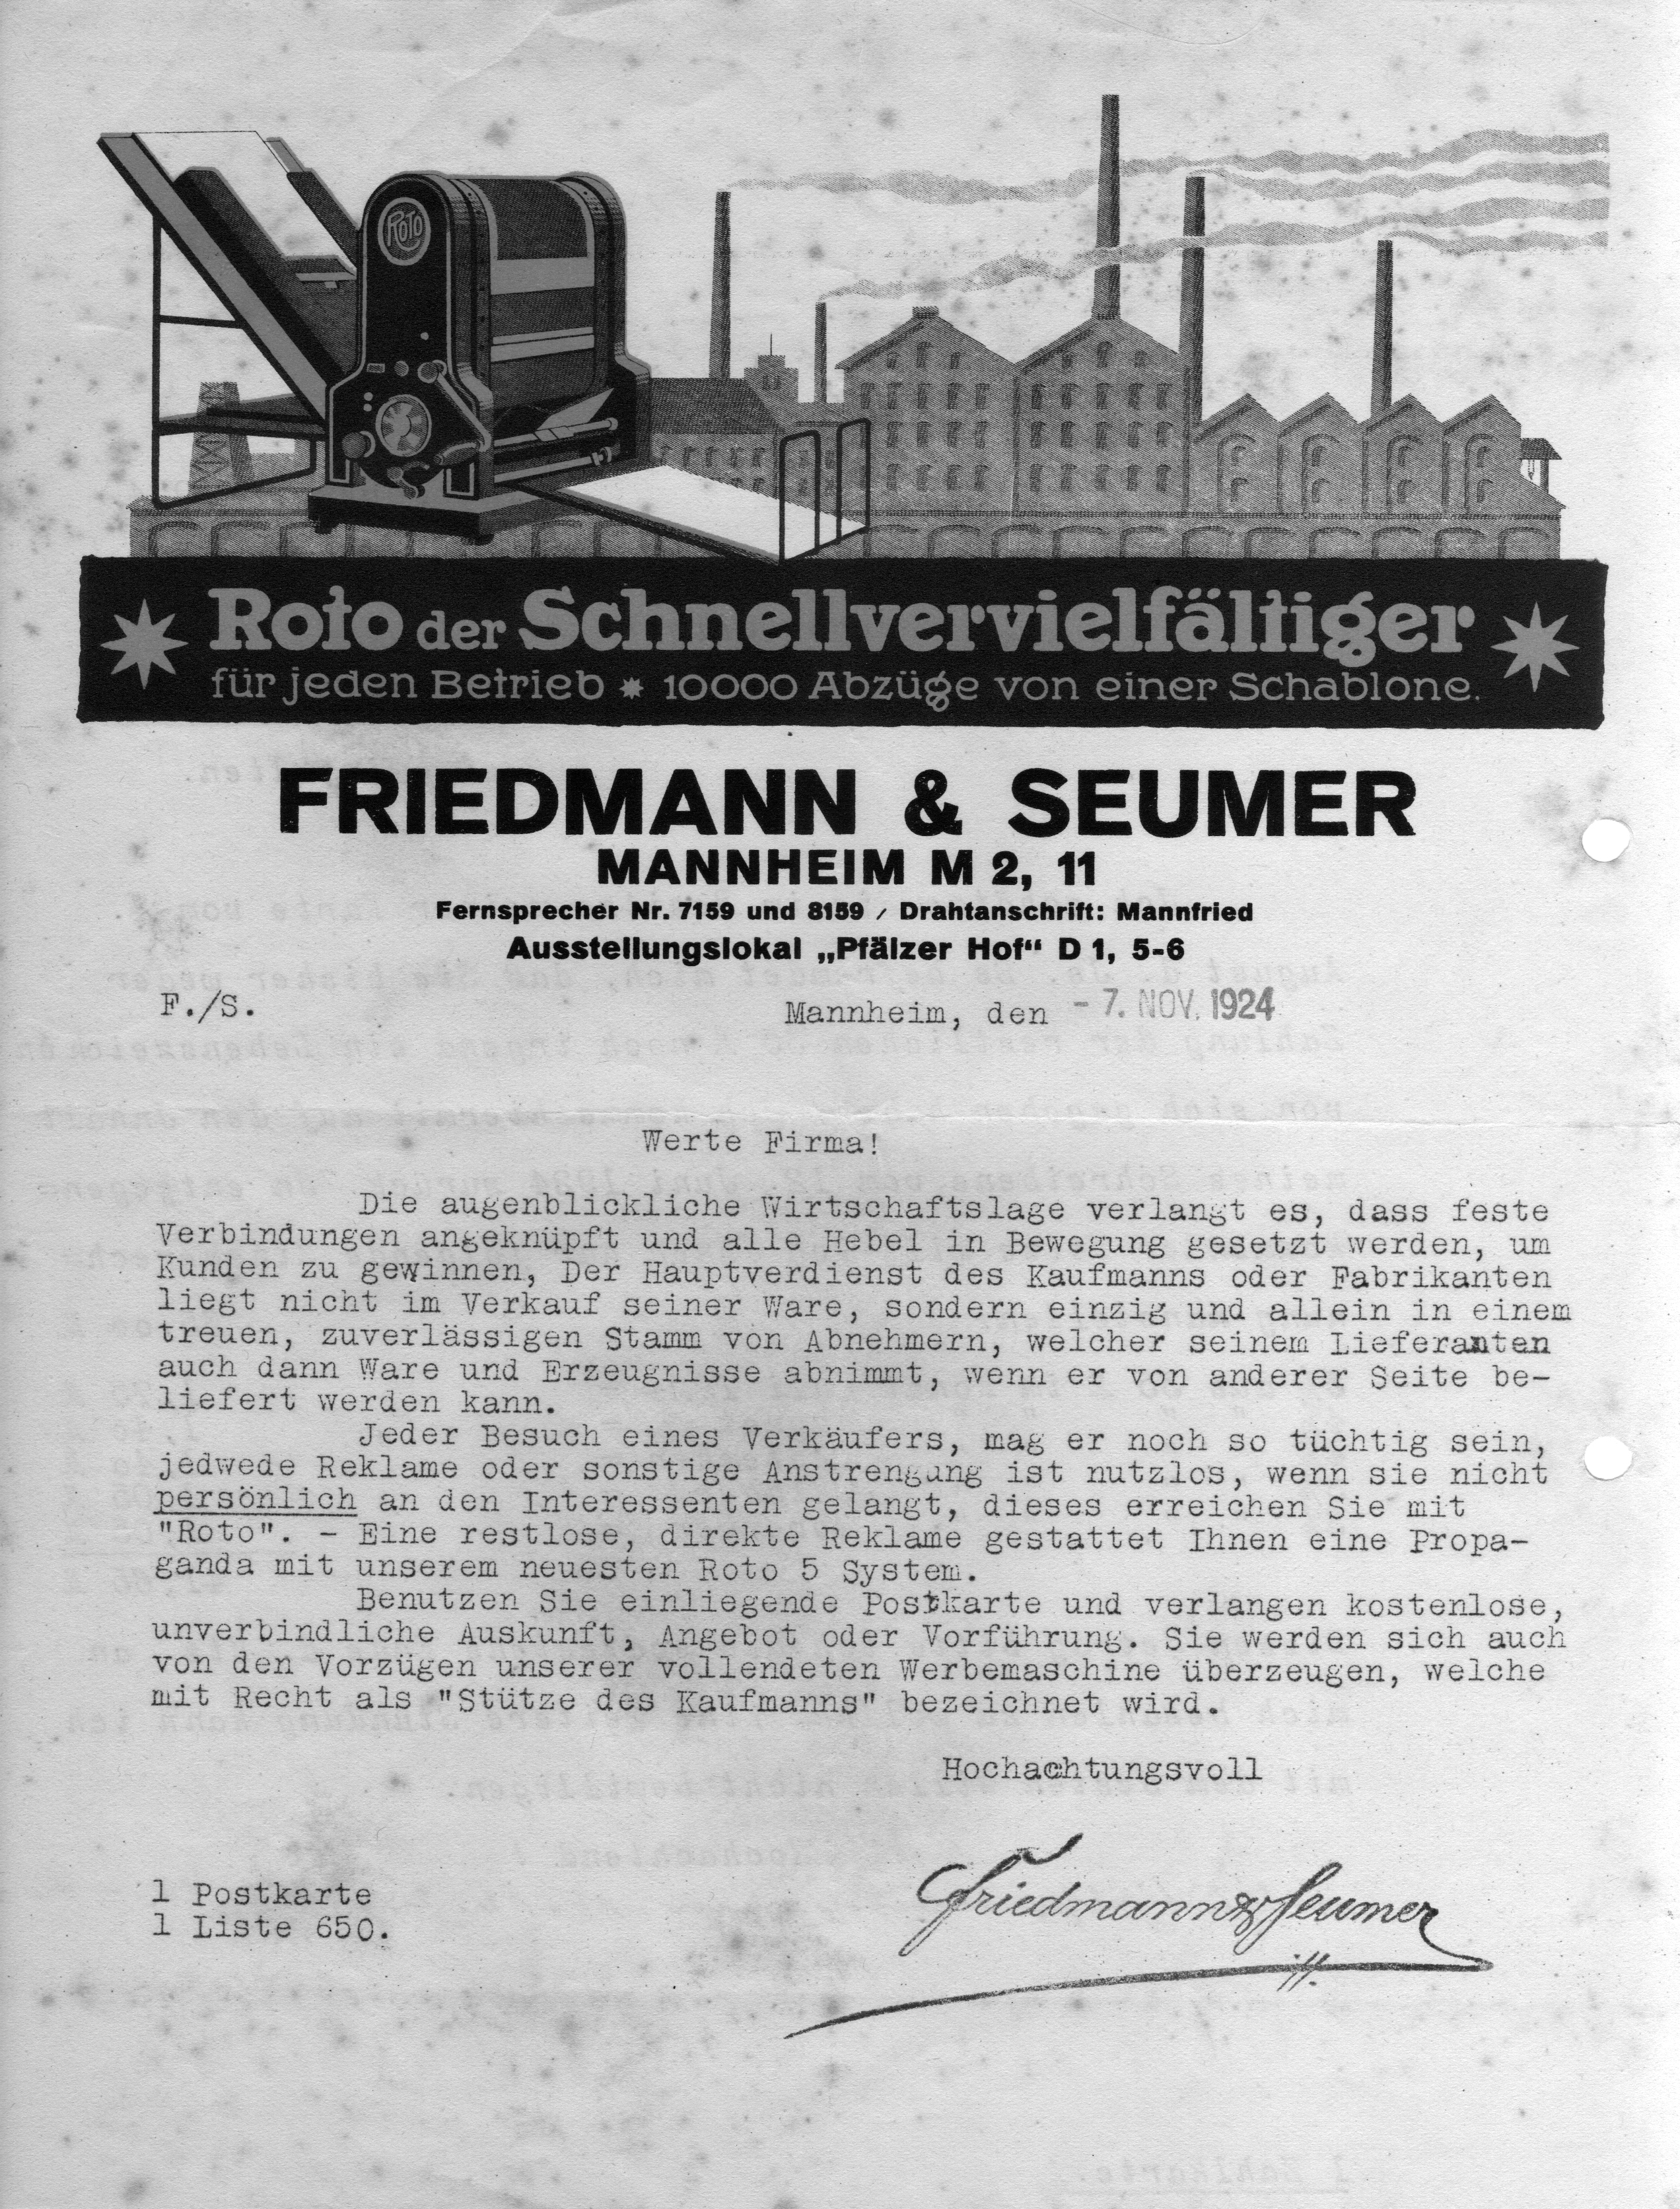 ROTO-Werbebrief der Firma FRIEDMANN & SEUMER aus Mannheim, vom 7. November 1924 – 10000 Abzüge von einer Schablone